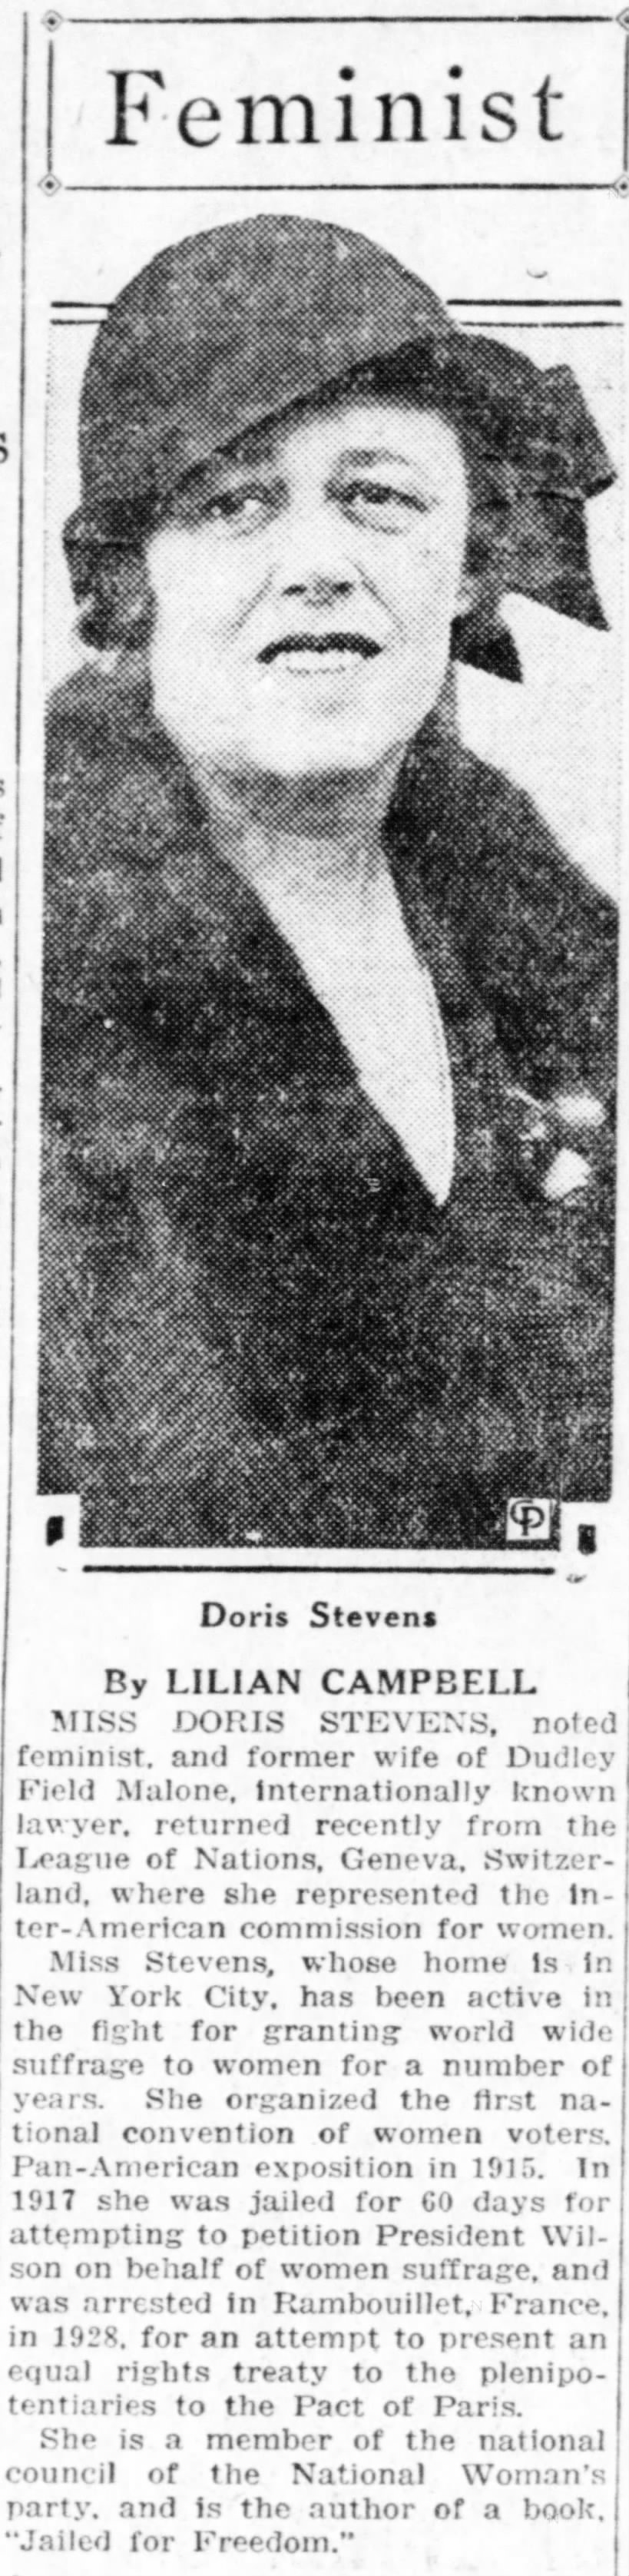 Campbell; Lilian. Feminist, Valley Morning Star, (Harlingen, Texas) 15 September 1931, p 4